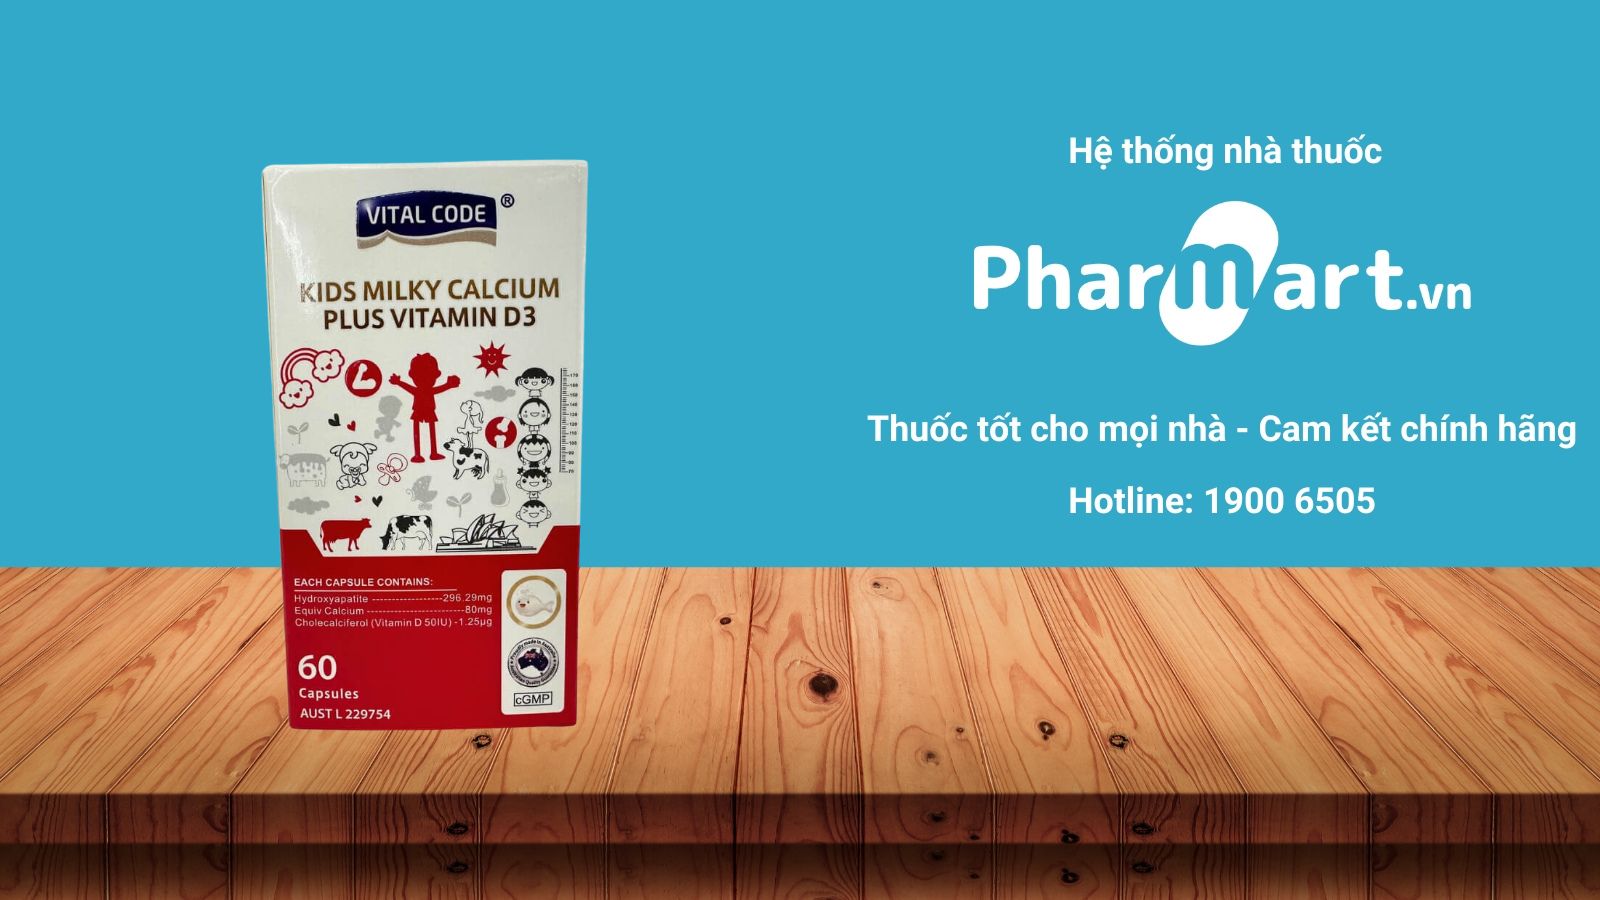 Mua ngay Kids Milky Calcium Plus Vitamin D3 chính hãng tại Pharmart.vn